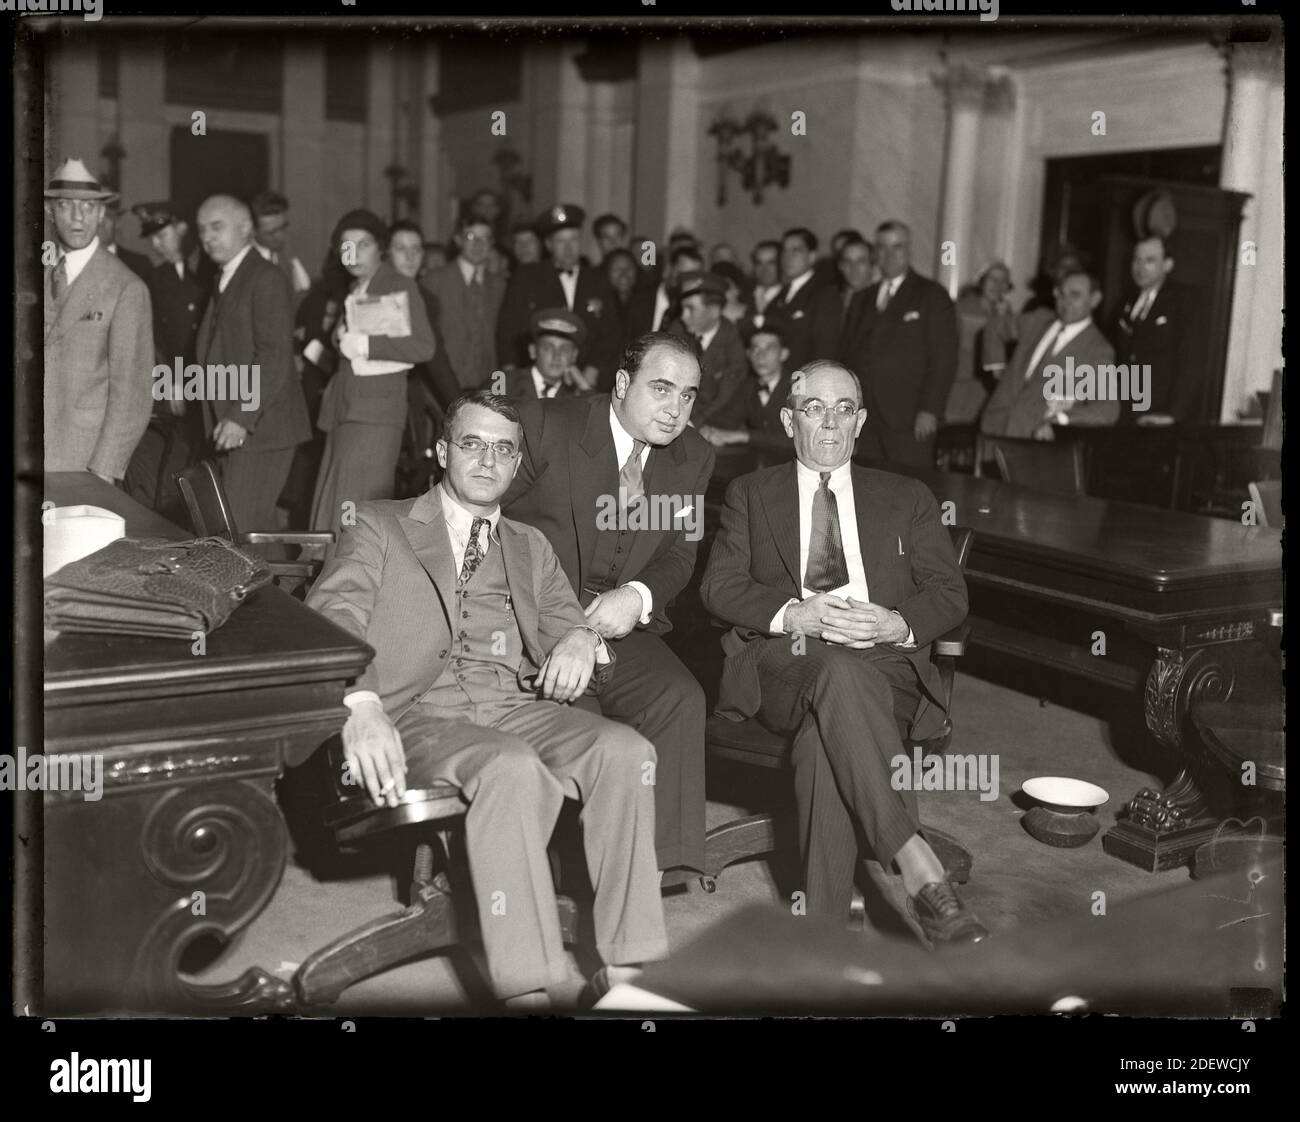 Al Capone siège au tribunal fédéral pendant son procès d'évasion fiscale avec ses avocats Michael Ahern, à gauche, et Albert Fink, à droite. Chicago, Illinois, 7 octobre 1931. Image du négatif de verre 4 x 5 pouces. Banque D'Images